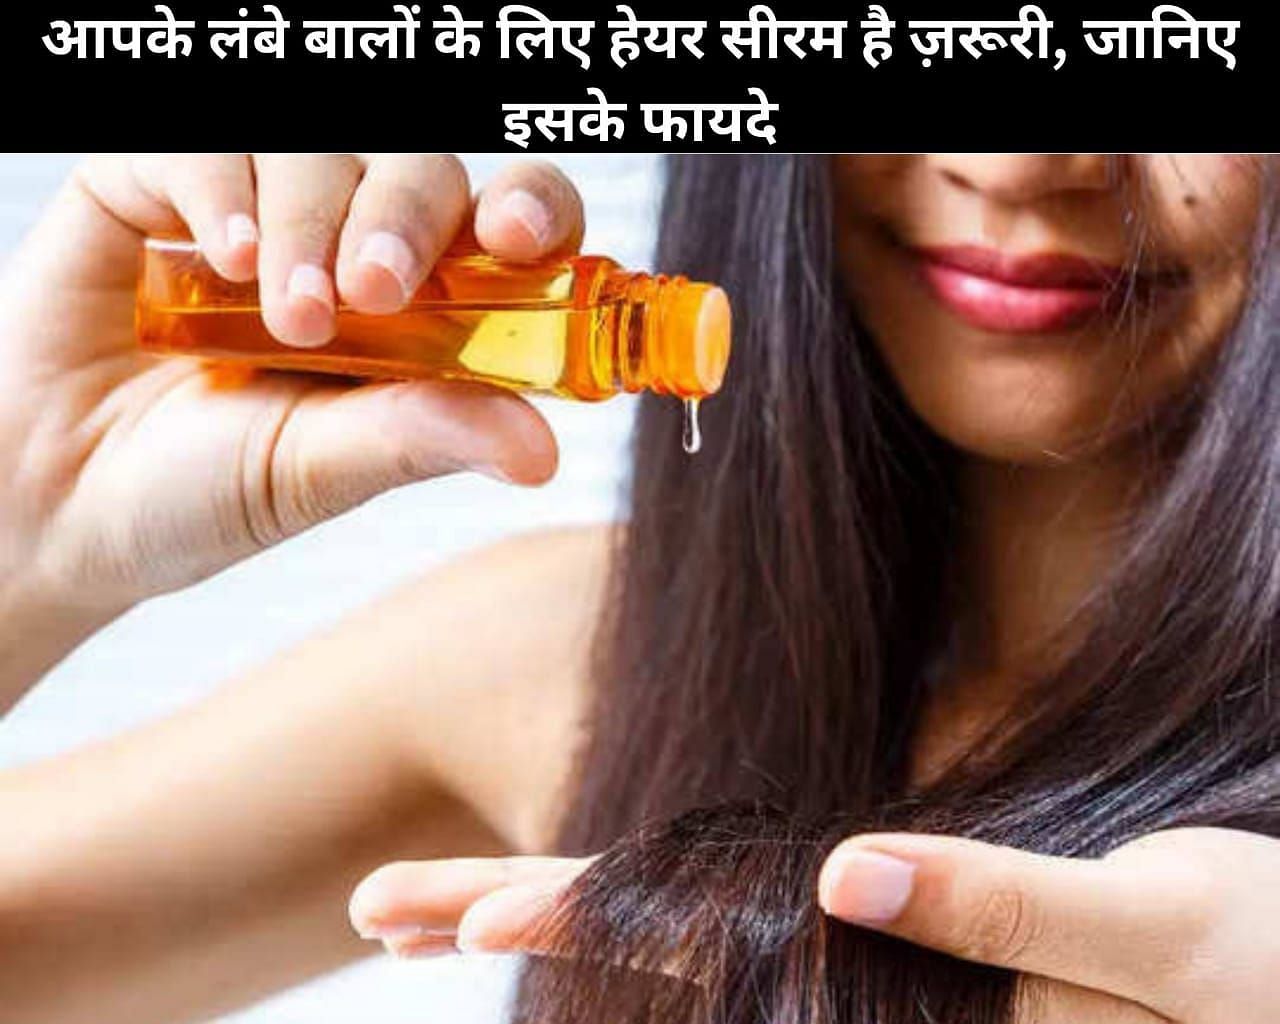 Hair Serum Is Necessary For Your Long Hair, Know Its 7 Benefits In Hindi:  आपके लंबे बालों के लिए हेयर सीरम है ज़रूरी, जानिए इसके 7 फायदे